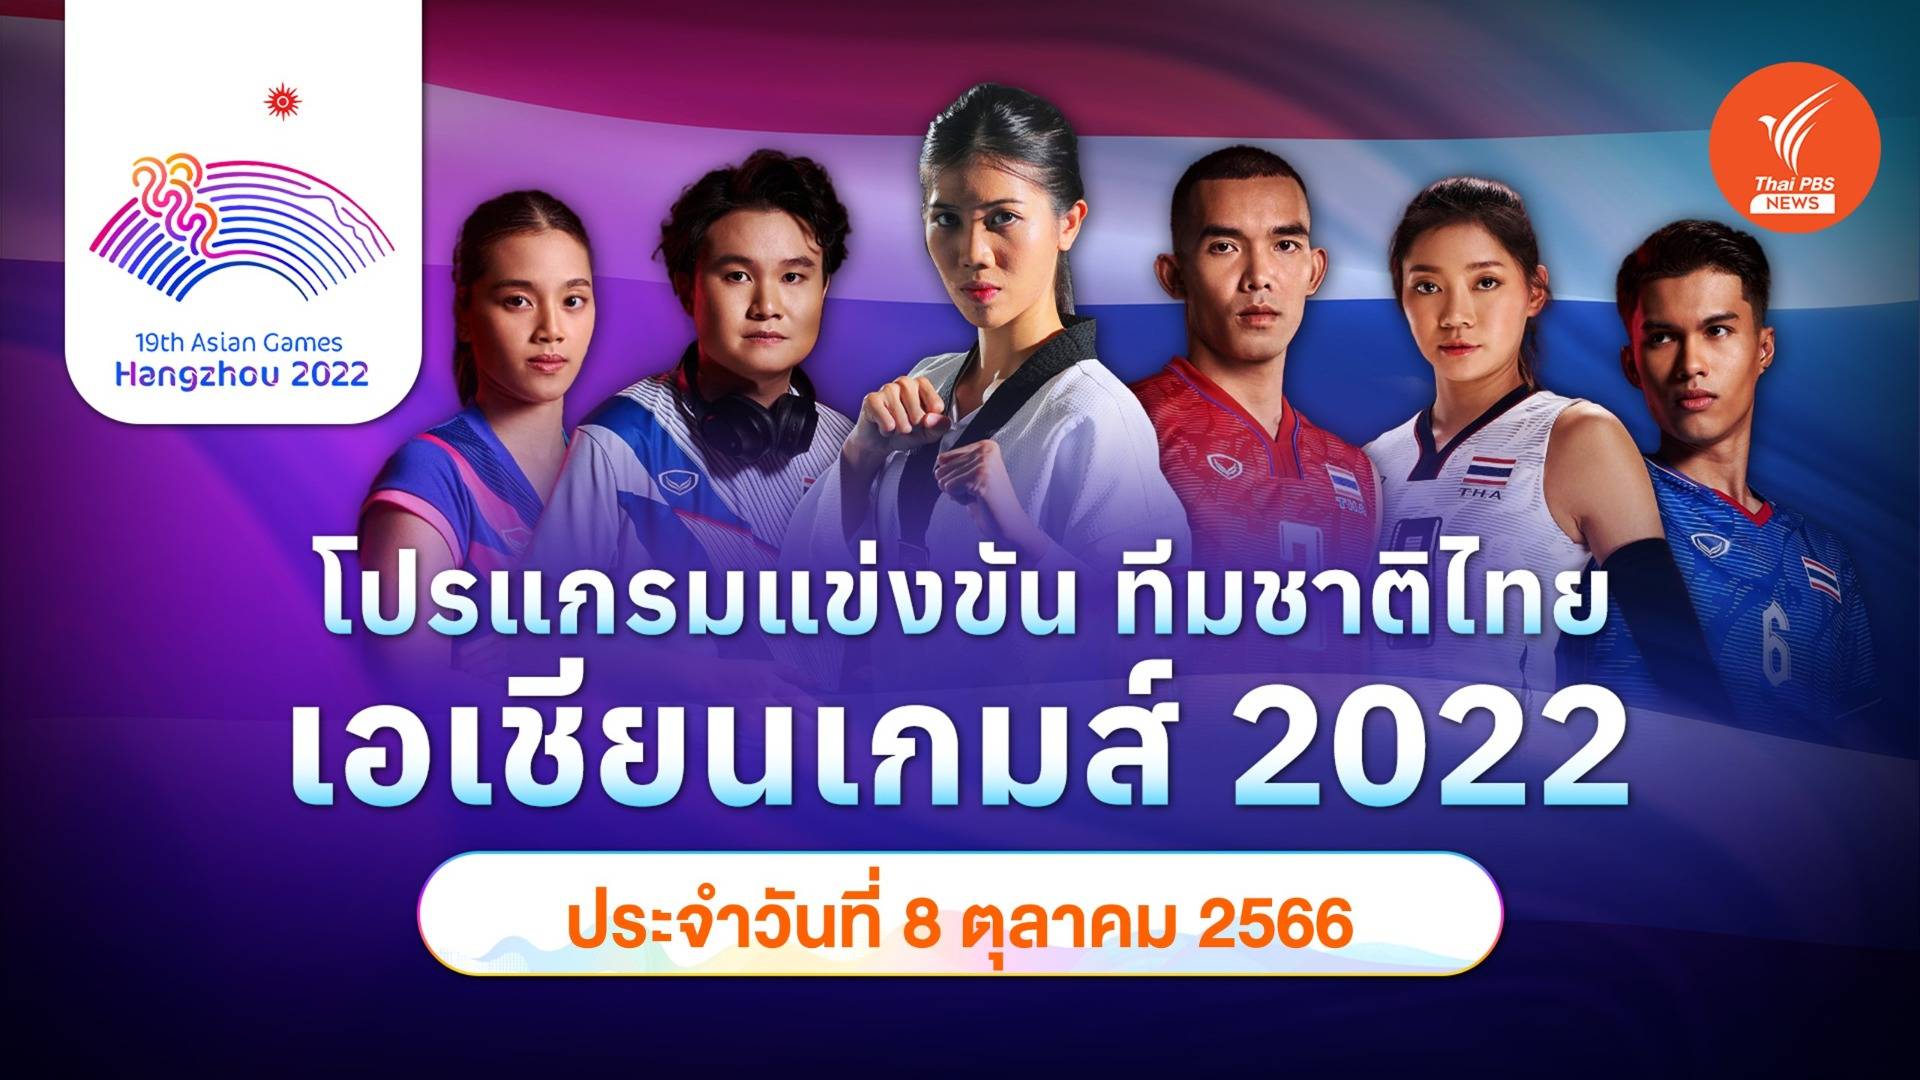 โปรแกรมการแข่งขัน เอเชียนเกมส์ 2022 ทัพนักกีฬาไทย วันที่ 8 ต.ค.2566